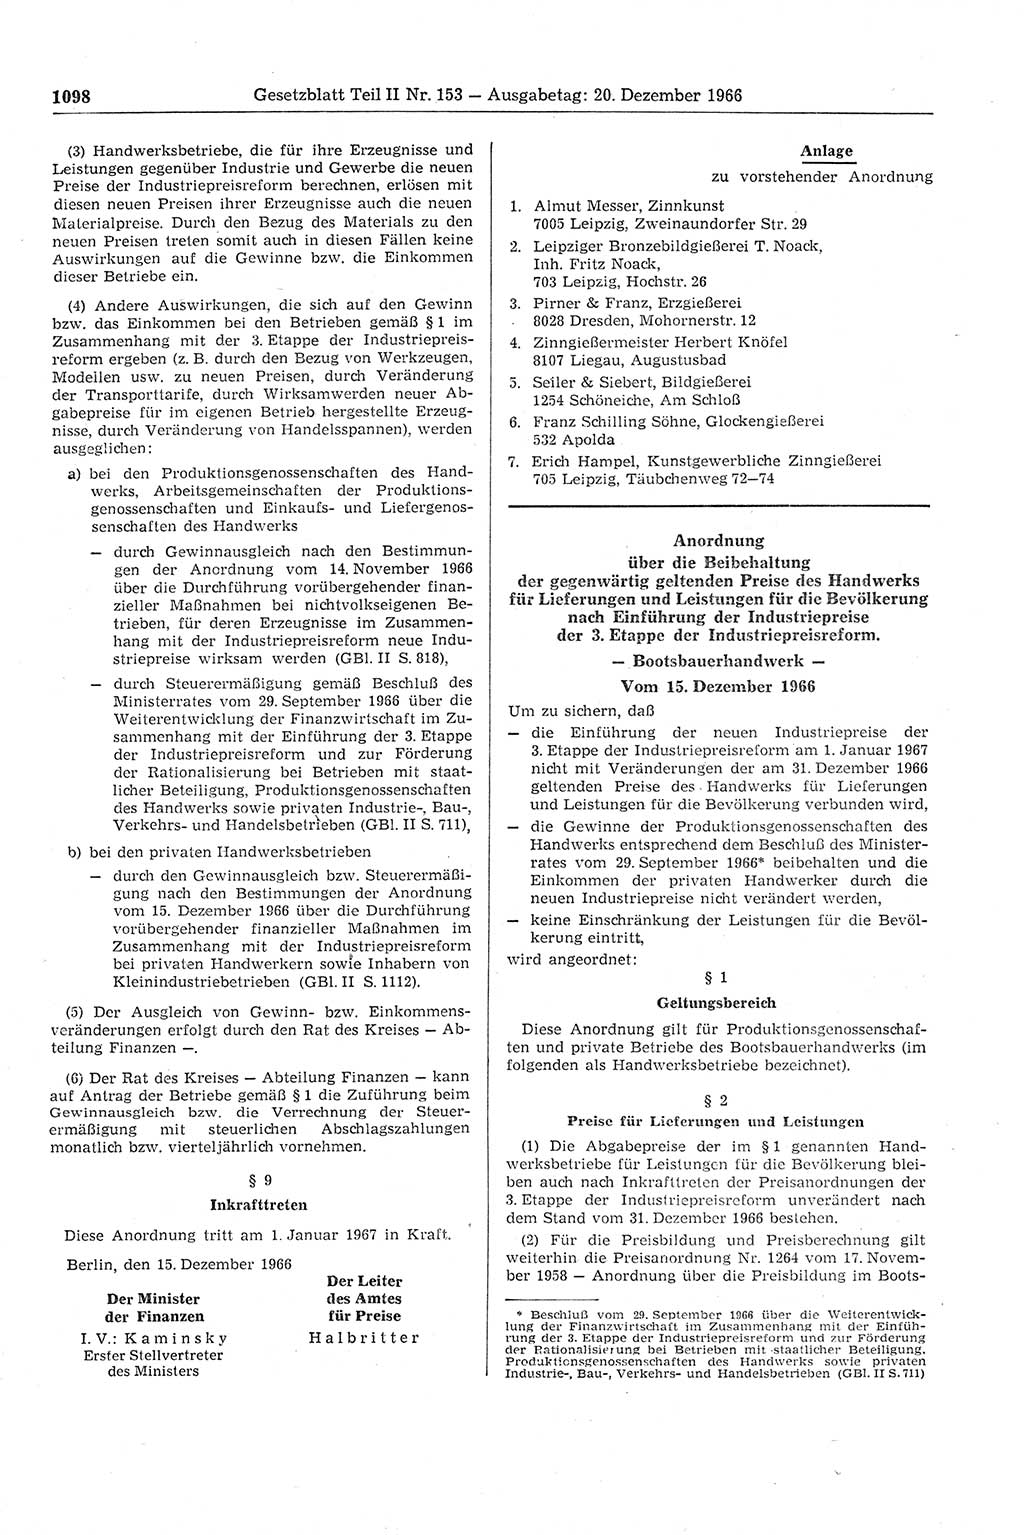 Gesetzblatt (GBl.) der Deutschen Demokratischen Republik (DDR) Teil ⅠⅠ 1966, Seite 1098 (GBl. DDR ⅠⅠ 1966, S. 1098)